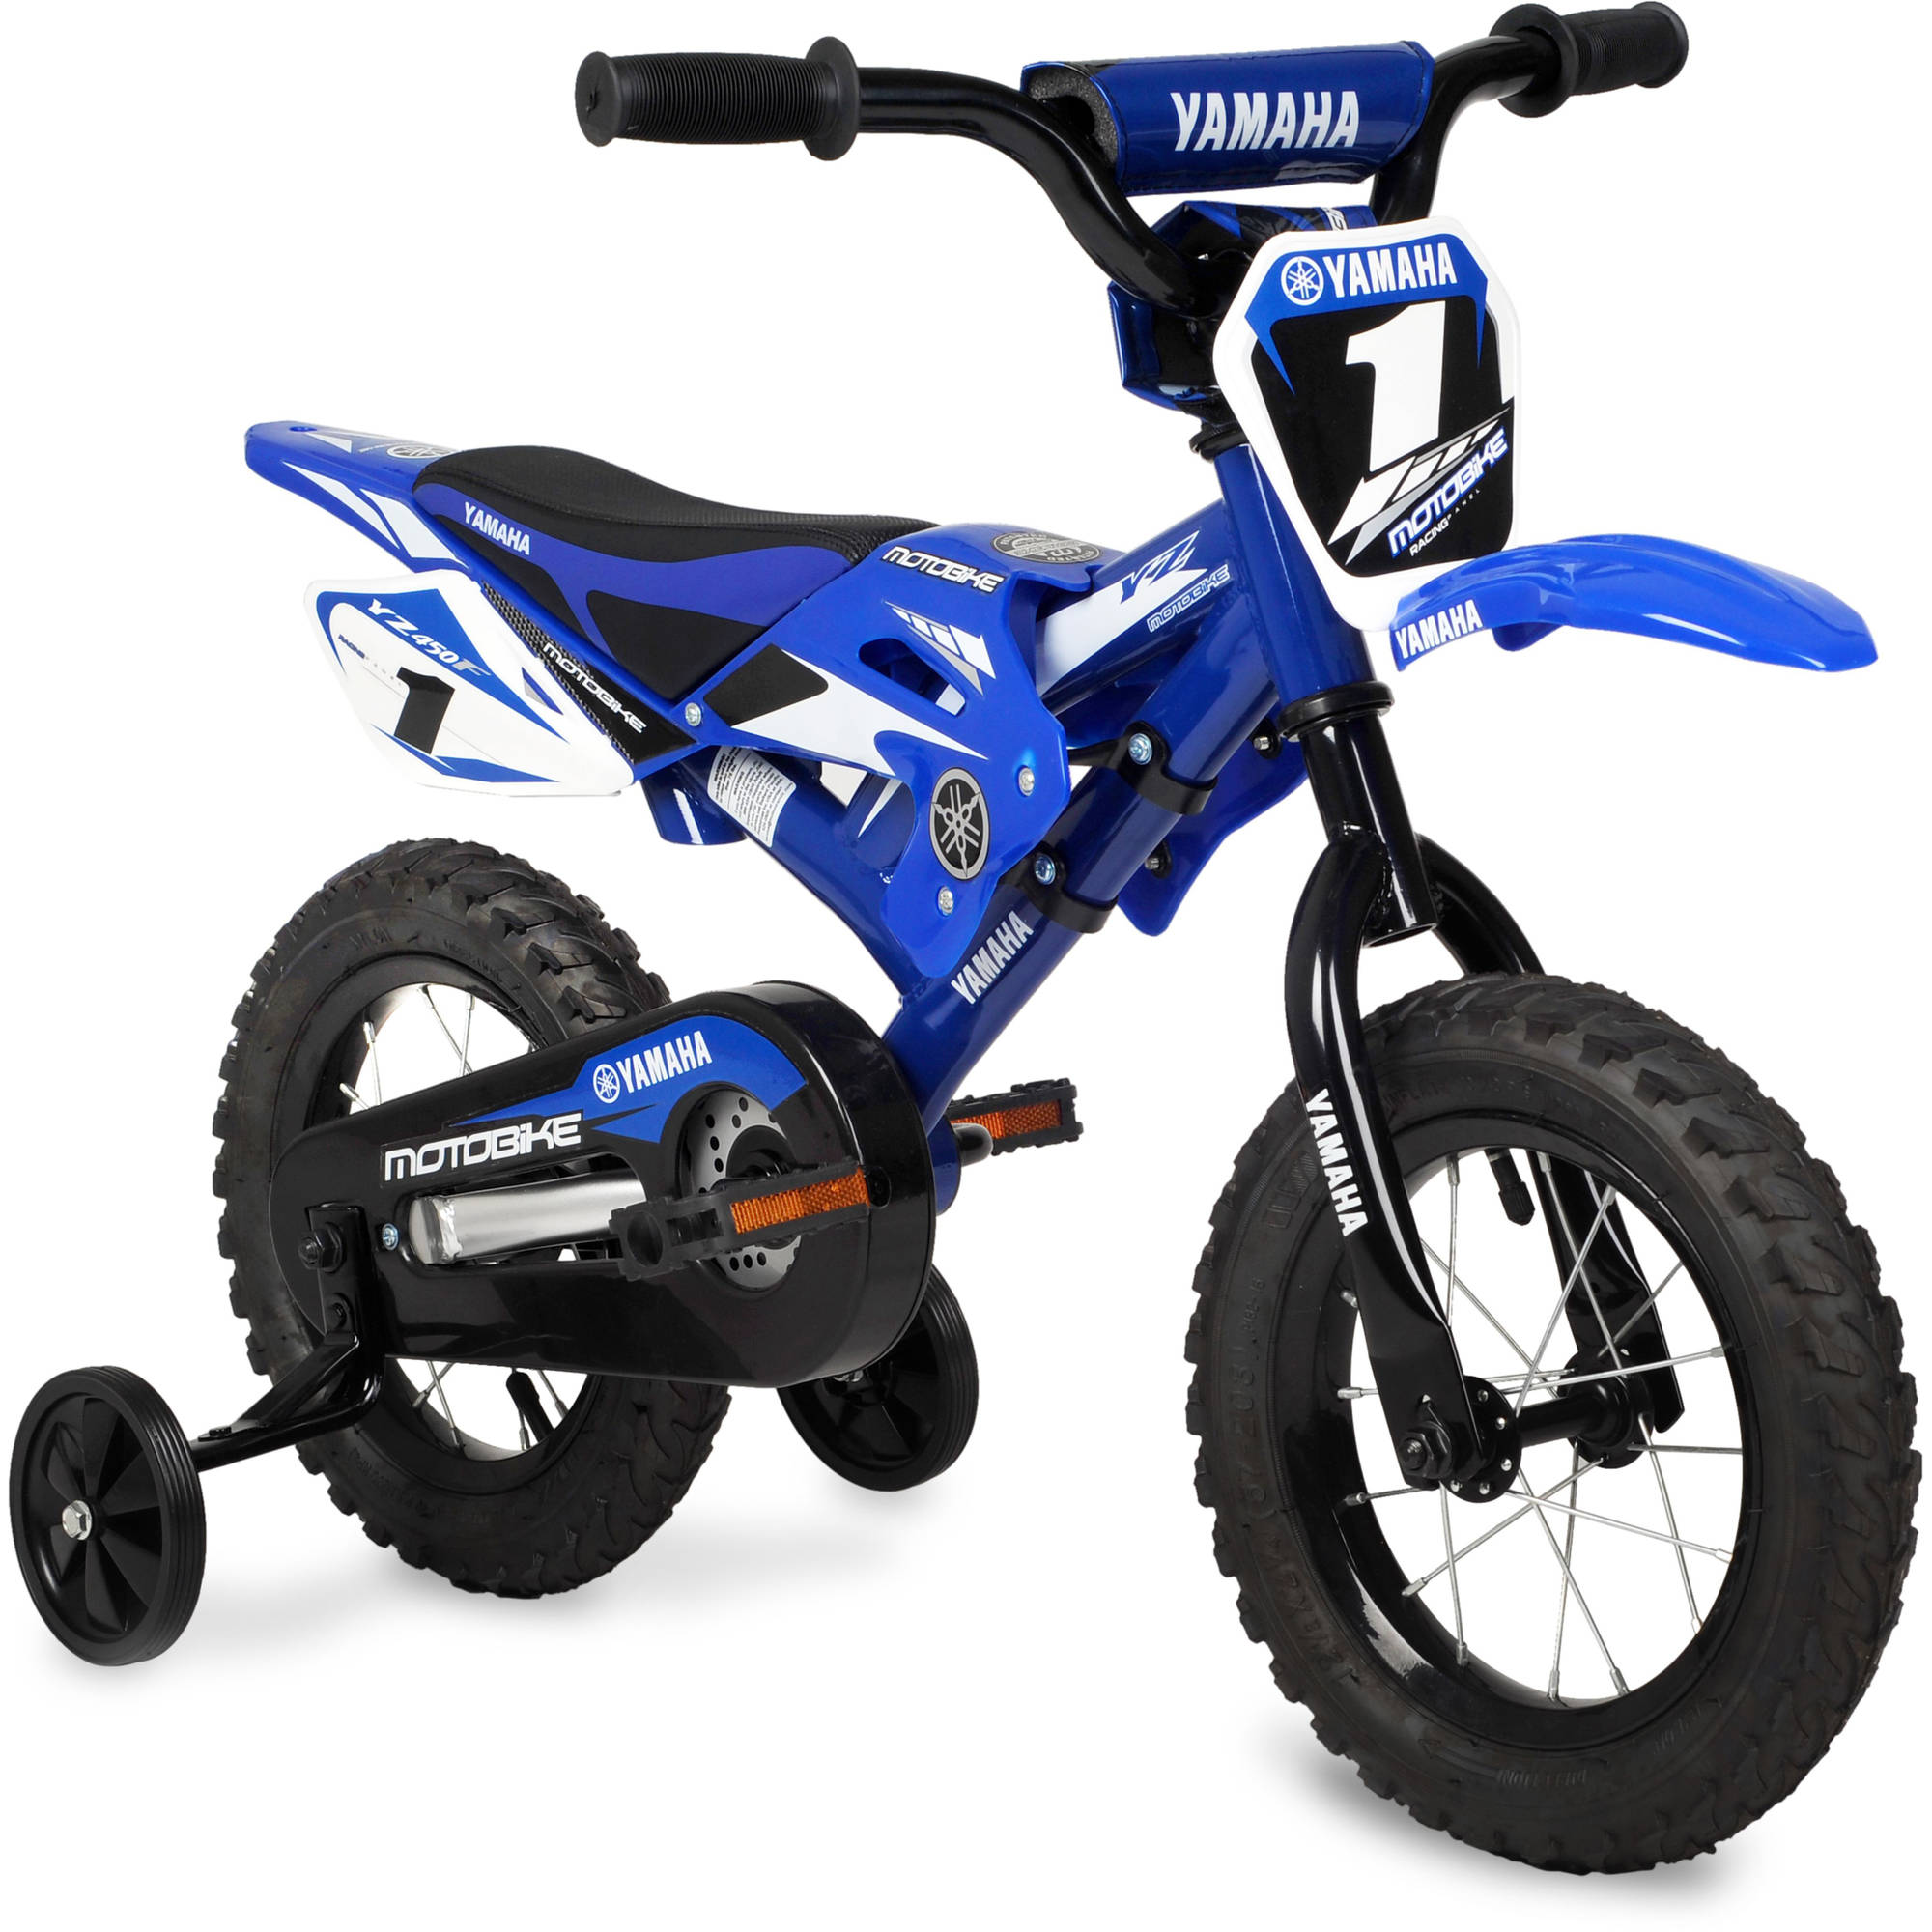 Yamaha 12" Moto BMX Boys Bike, Blue - image 1 of 5